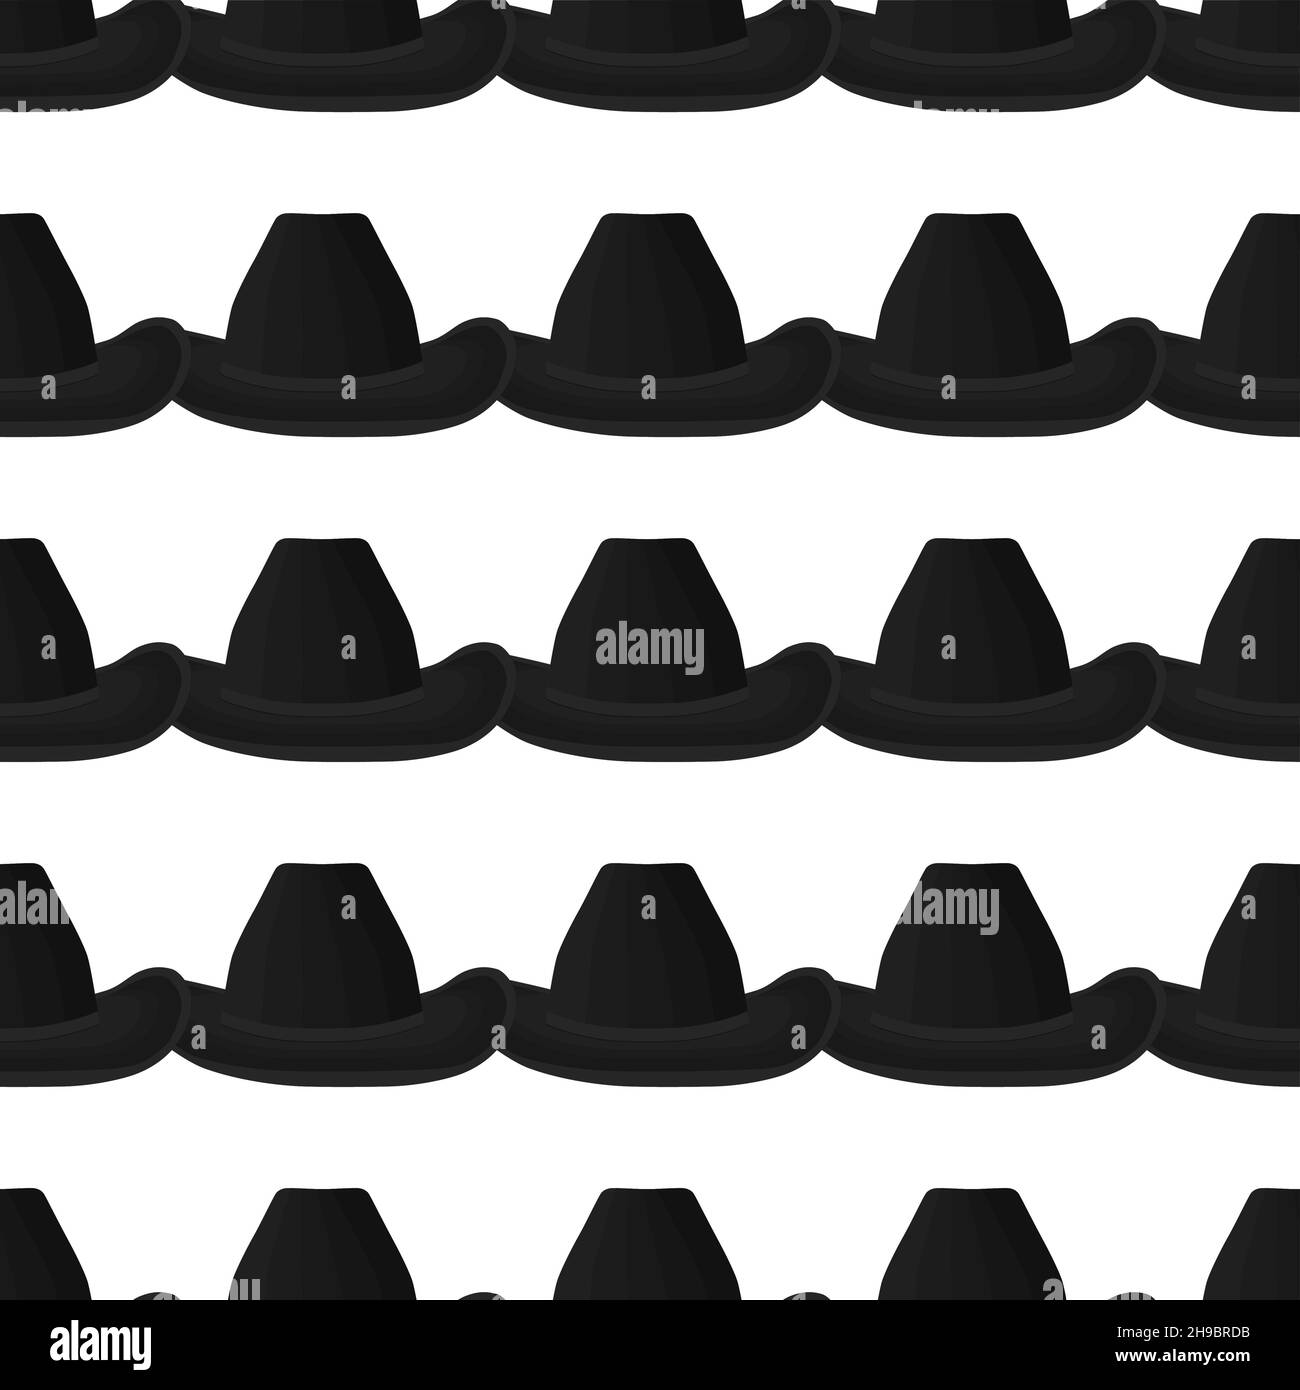 Illustration sur thème coloré motif chapeaux cowboy, belles casquettes en fond blanc.Motif de casquettes composé de chapeaux de collection cow-boy à porter. Illustration de Vecteur